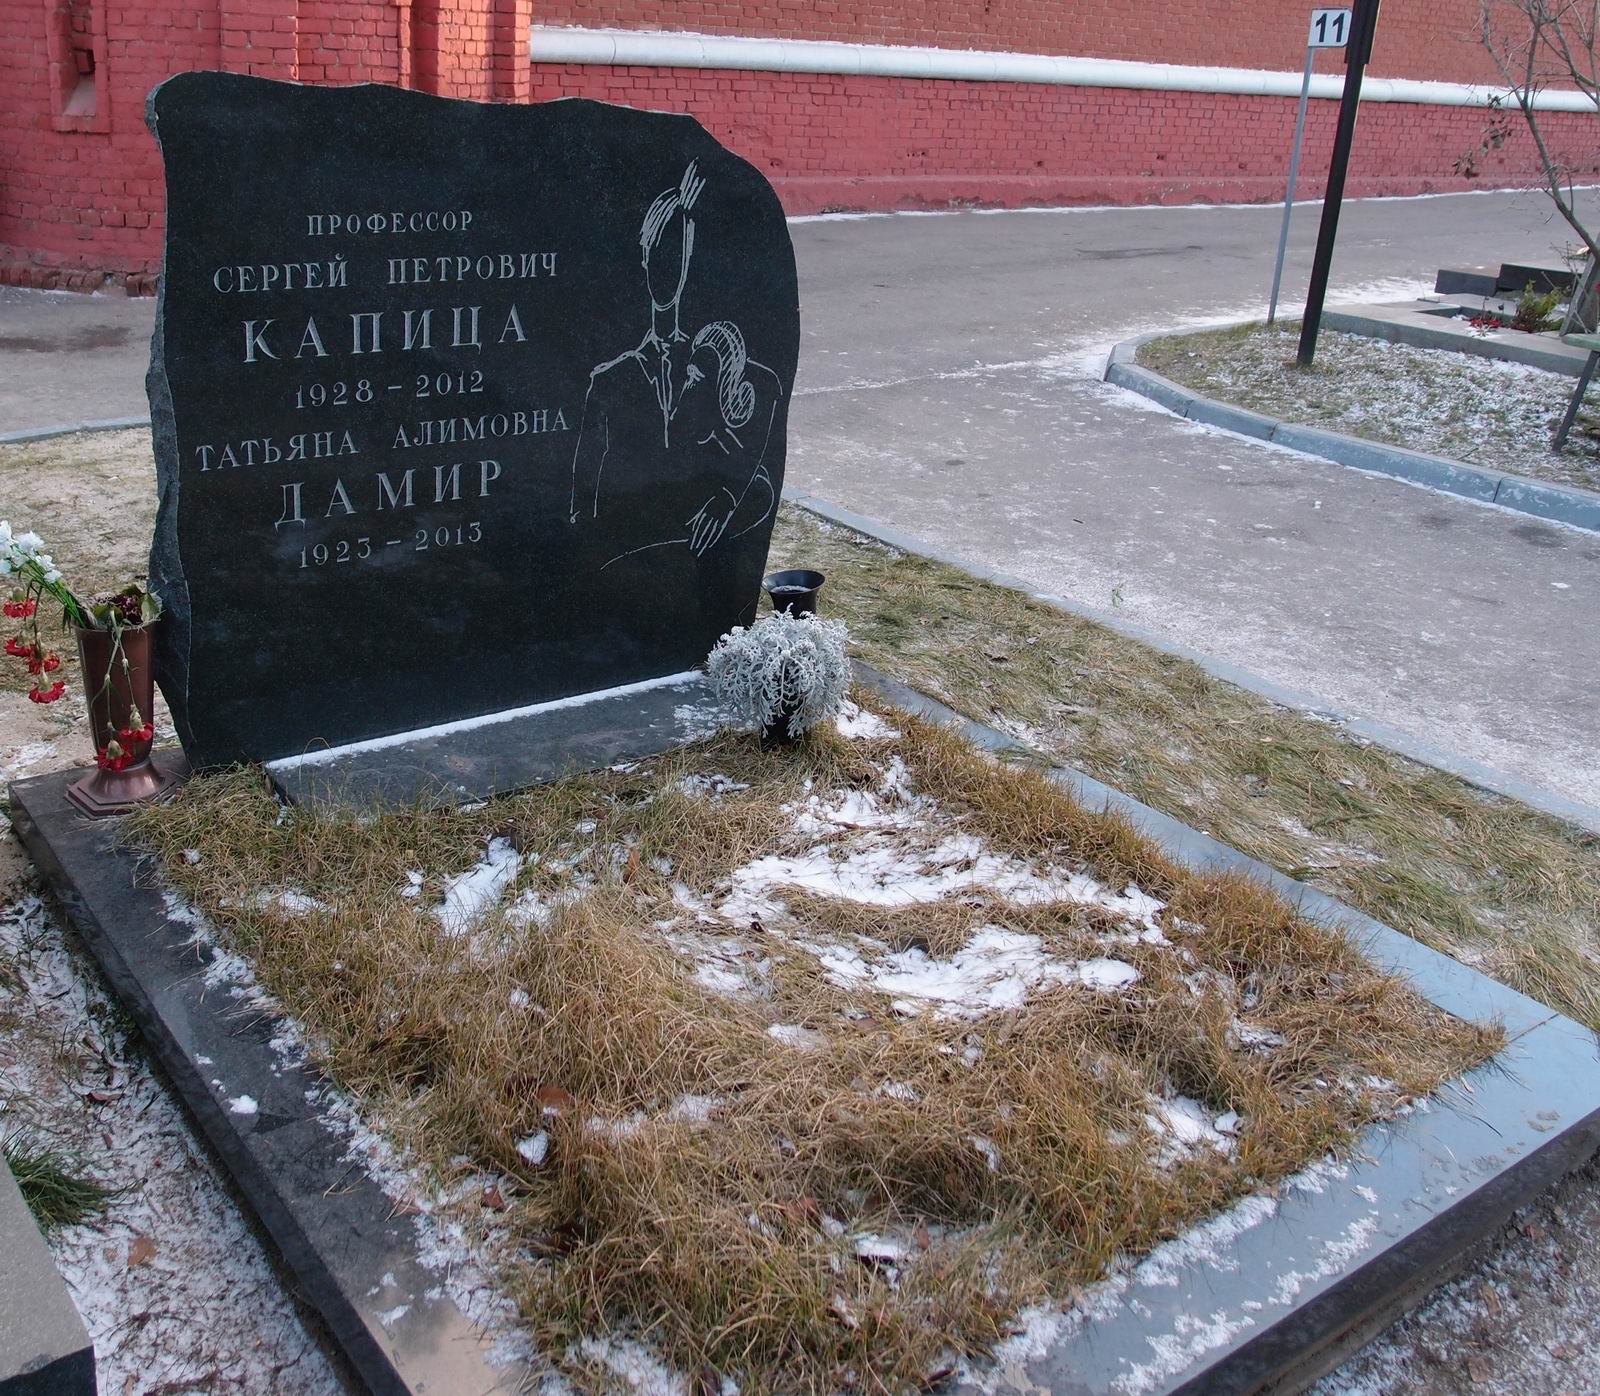 Памятник на могиле Капицы С.П. (1928-2012), на Новодевичьем кладбище (10-2-21).